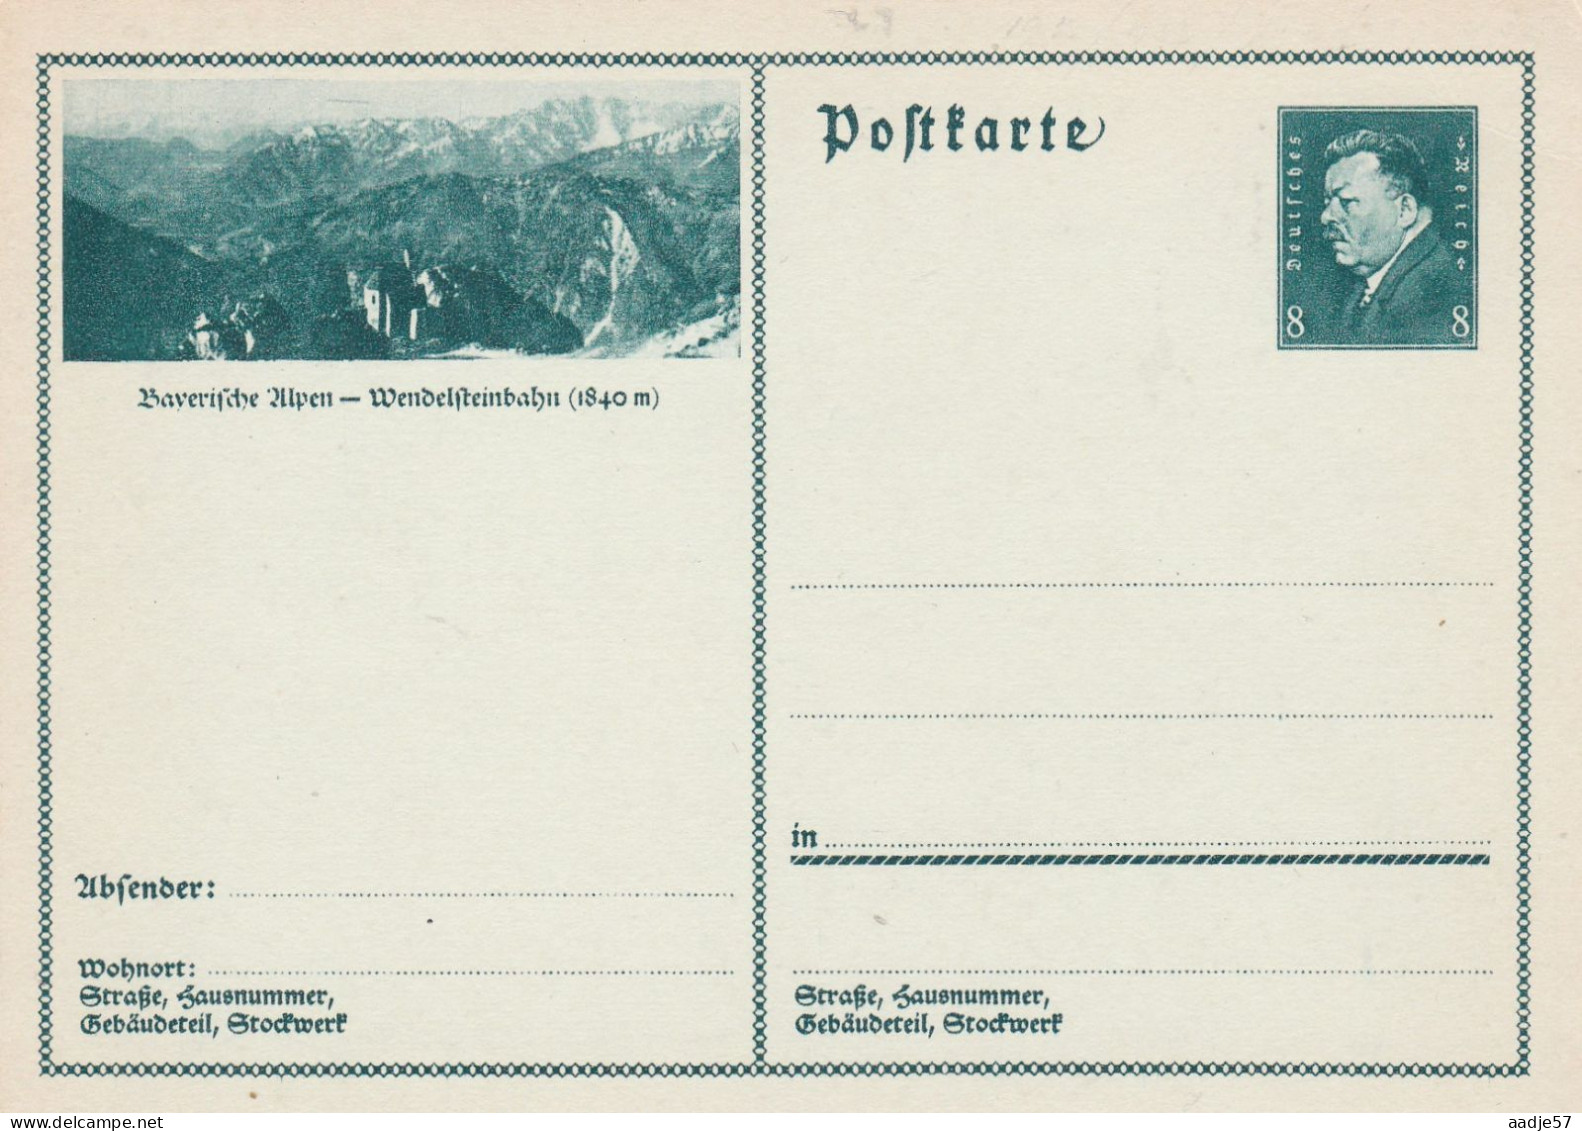 Besucht Baverische Alpen Wendelsteinbahn - Bildpostkarte 1931 -  Mint - Postcards